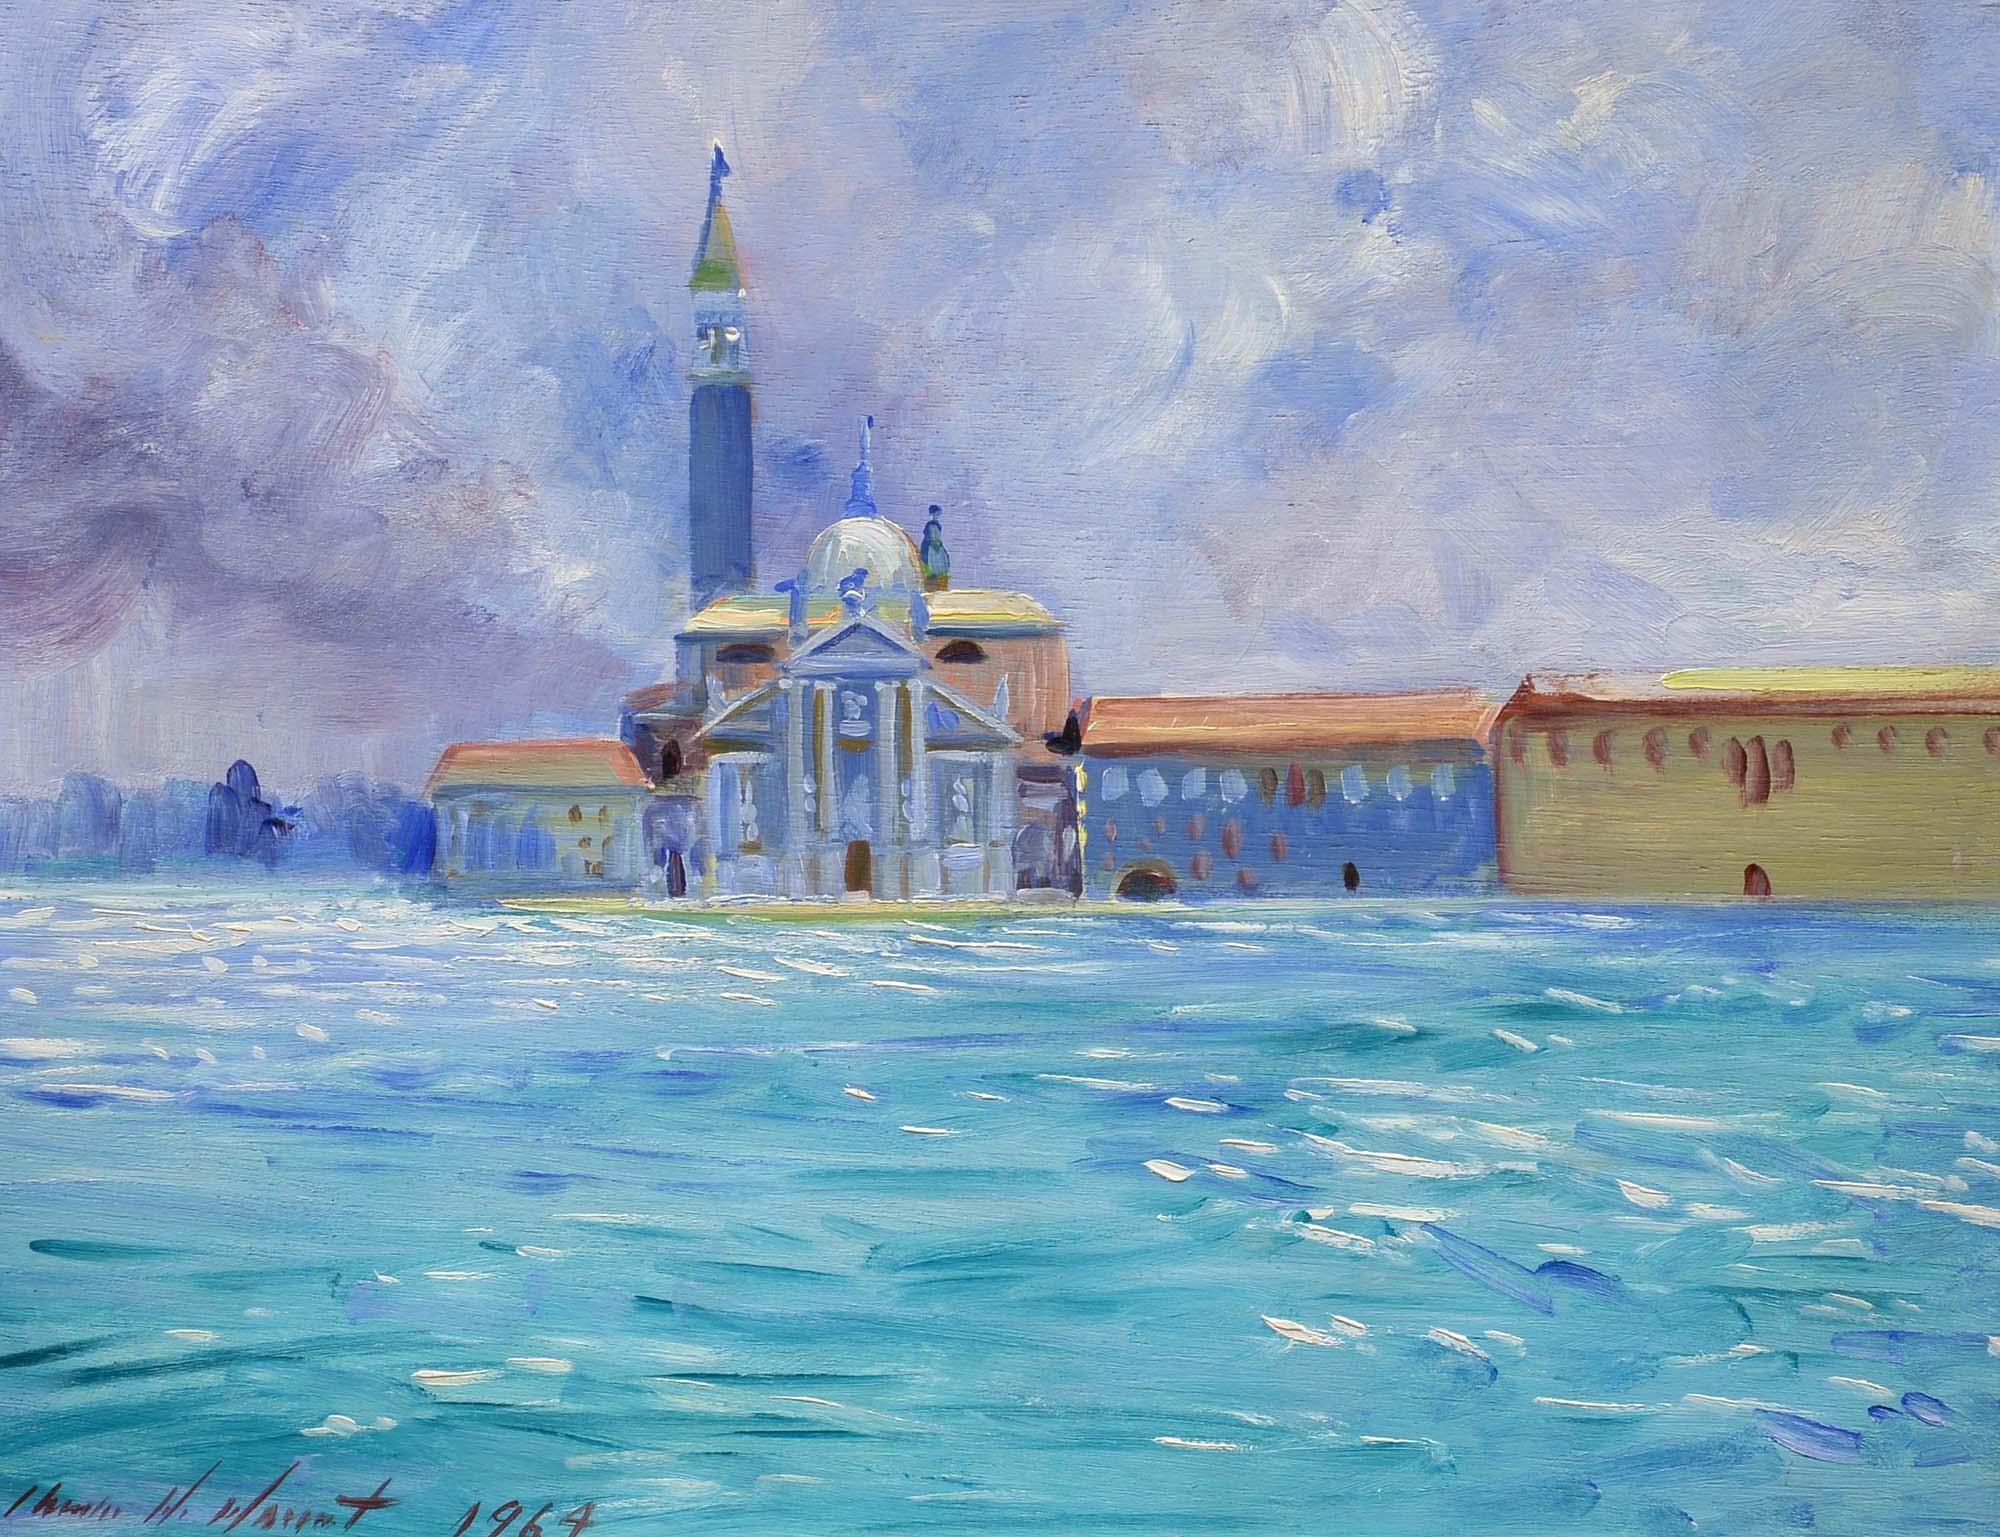 Charles Merrill Mount Landscape Painting - San Giorgio Maggiore, Venice, Italy, American Impressionist, Oil